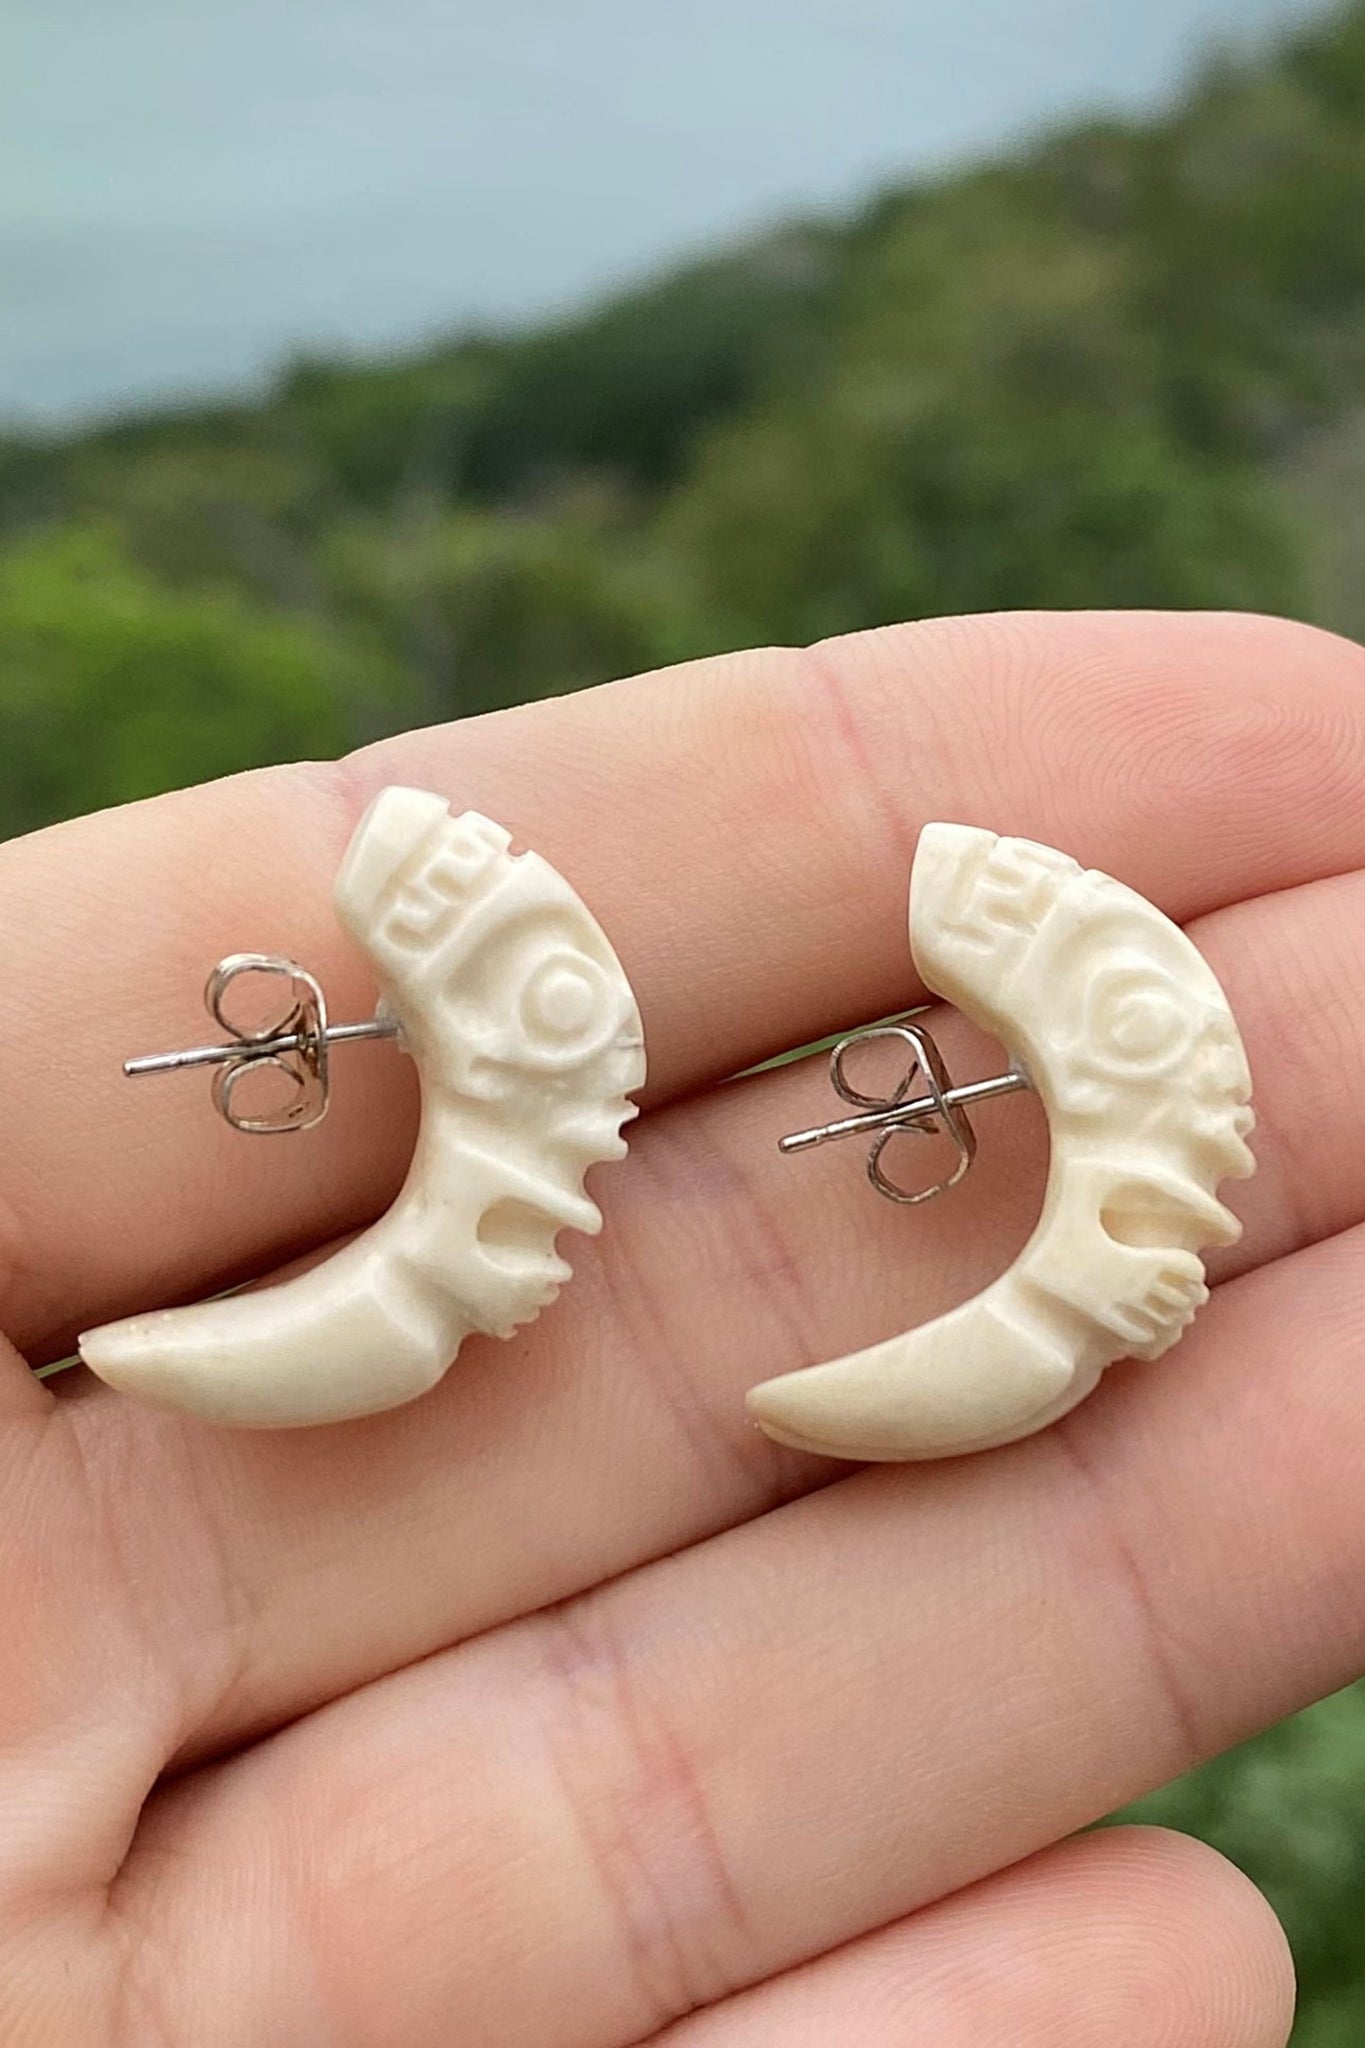 Tiki earrings